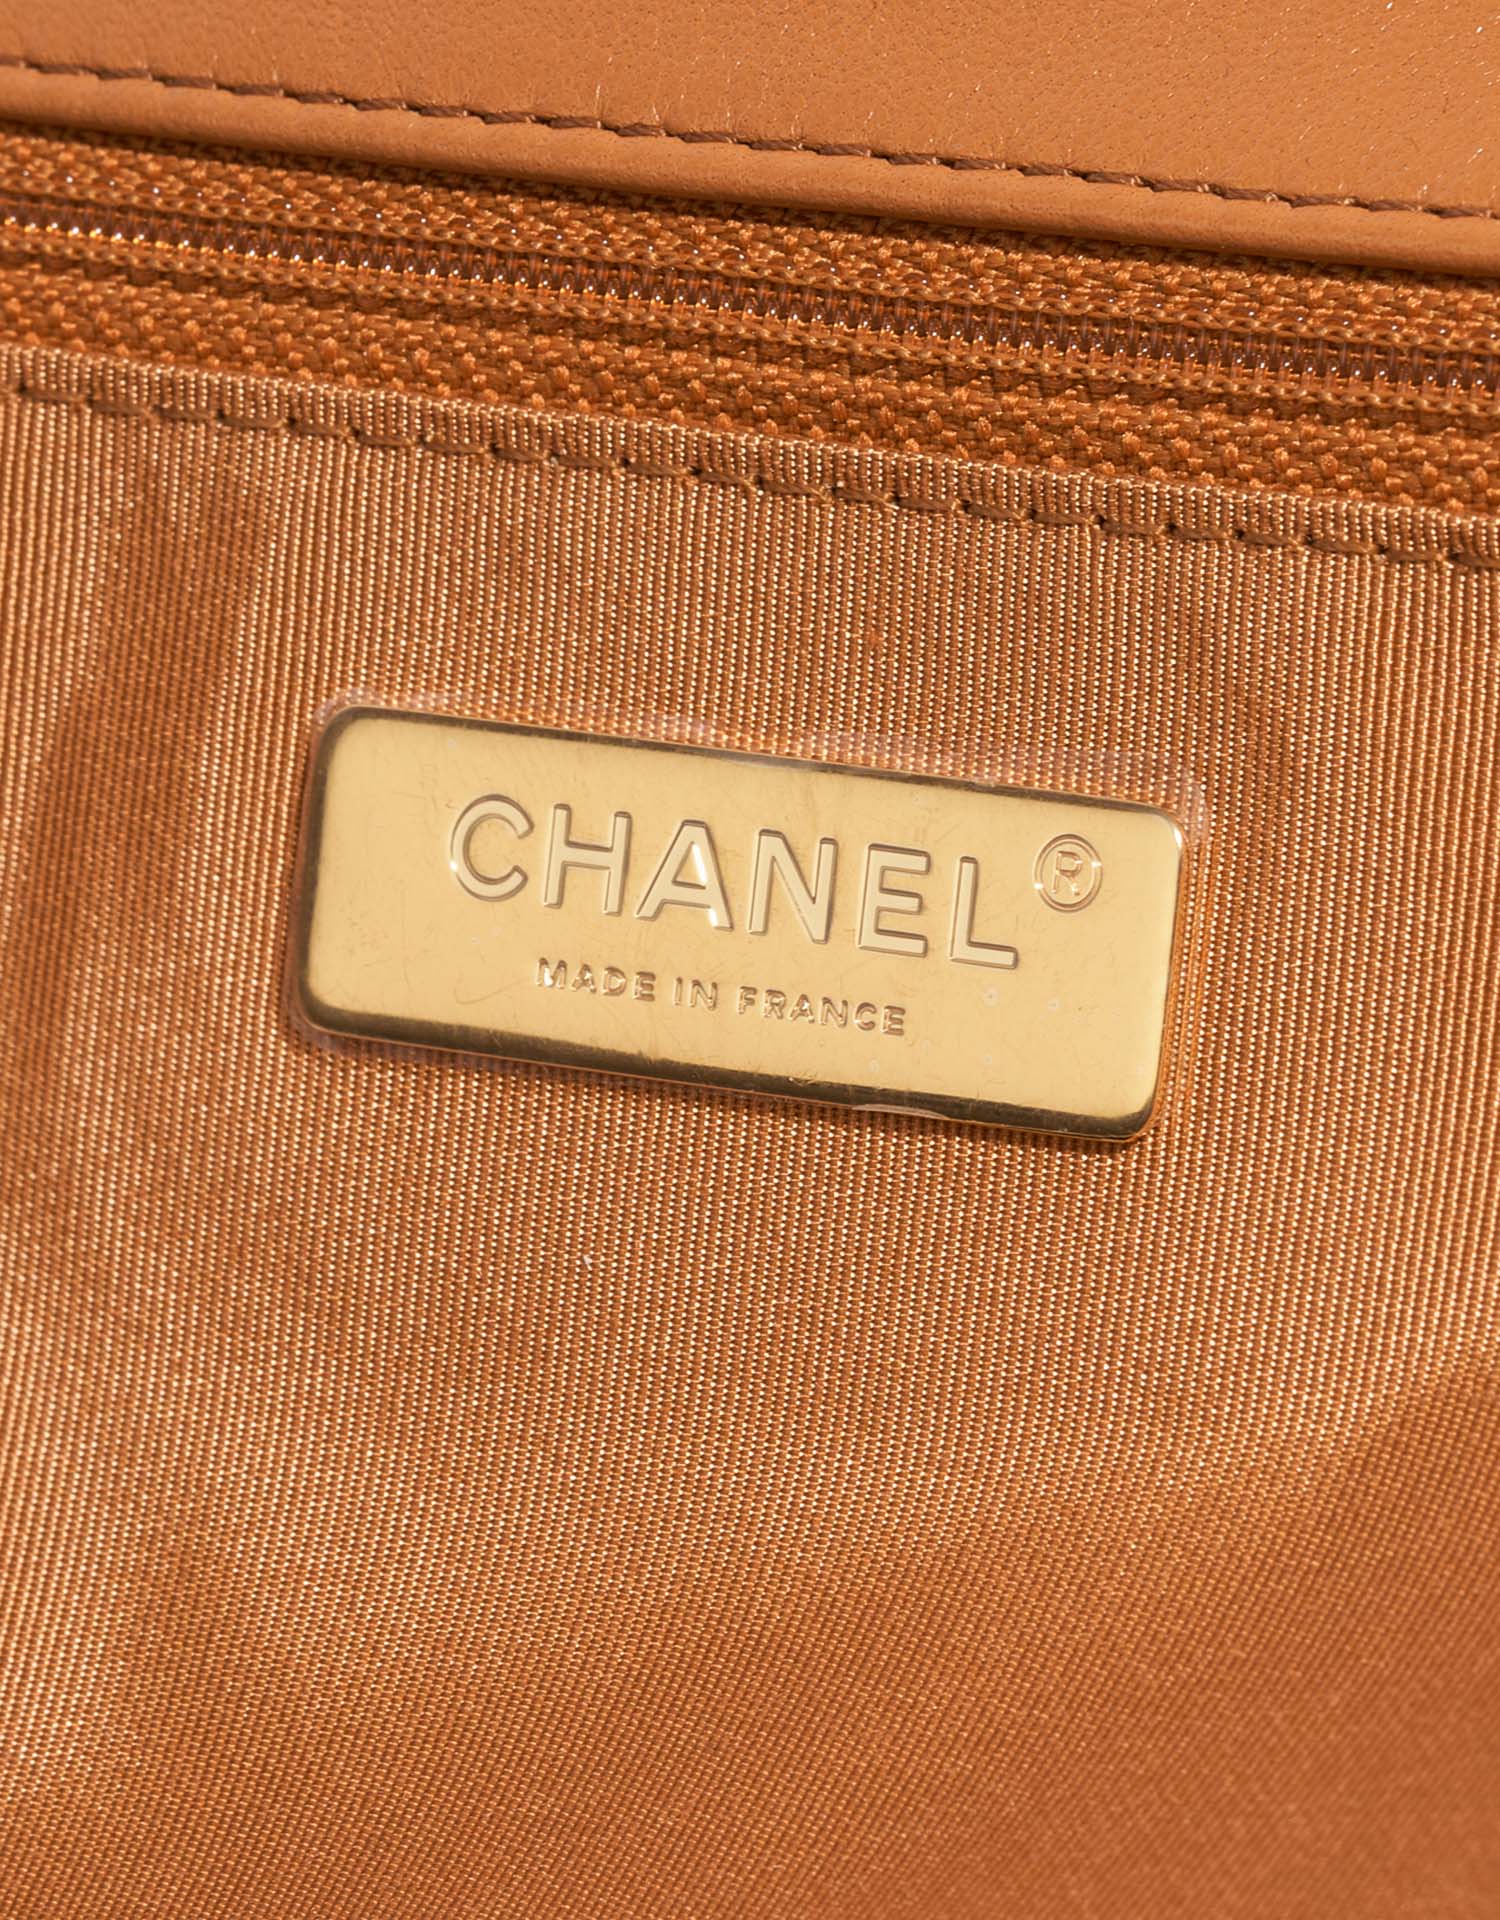 Chanel 19 Large Flap Bag Cognac Logo | Verkaufen Sie Ihre Designer-Tasche auf Saclab.com